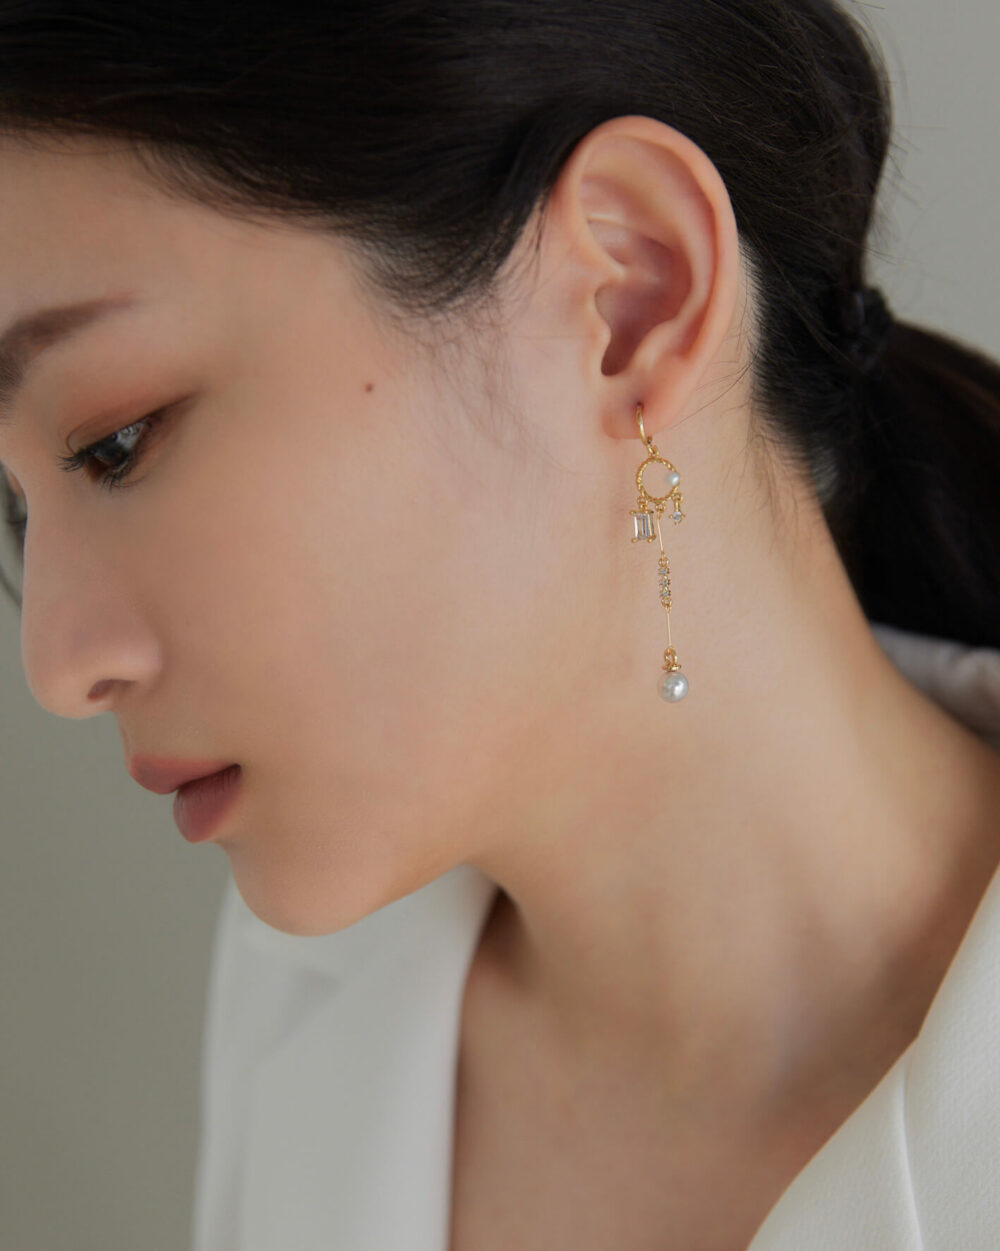 Eco安珂,韓國飾品,韓國耳環,耳針式耳環,垂墜耳環,氣質耳環,婚宴耳環